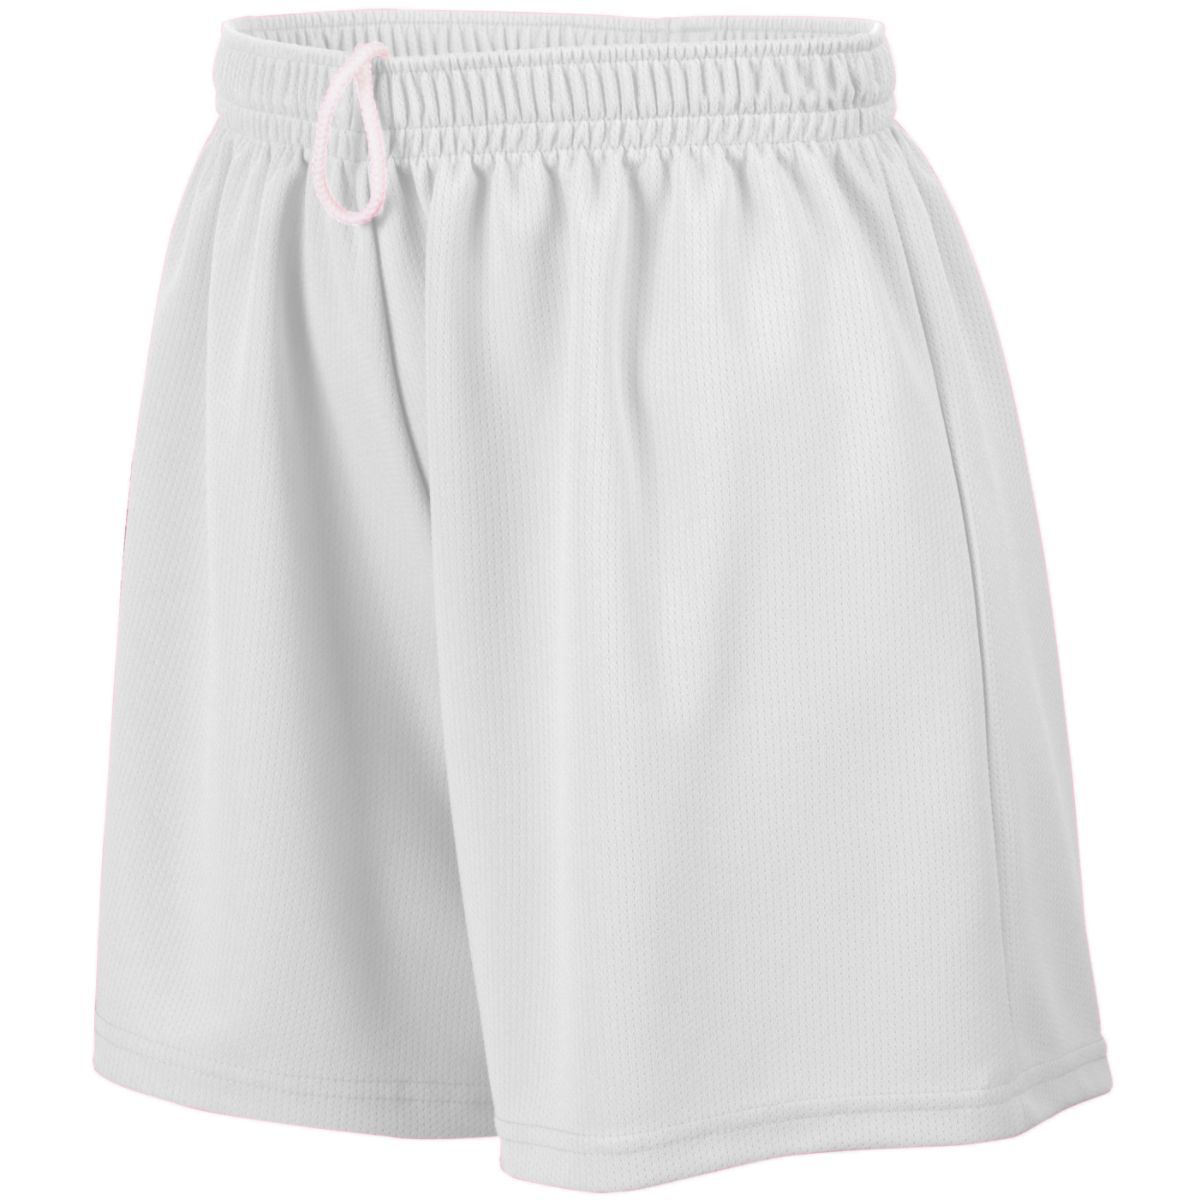 Ladies Wicking Mesh Shorts - 960